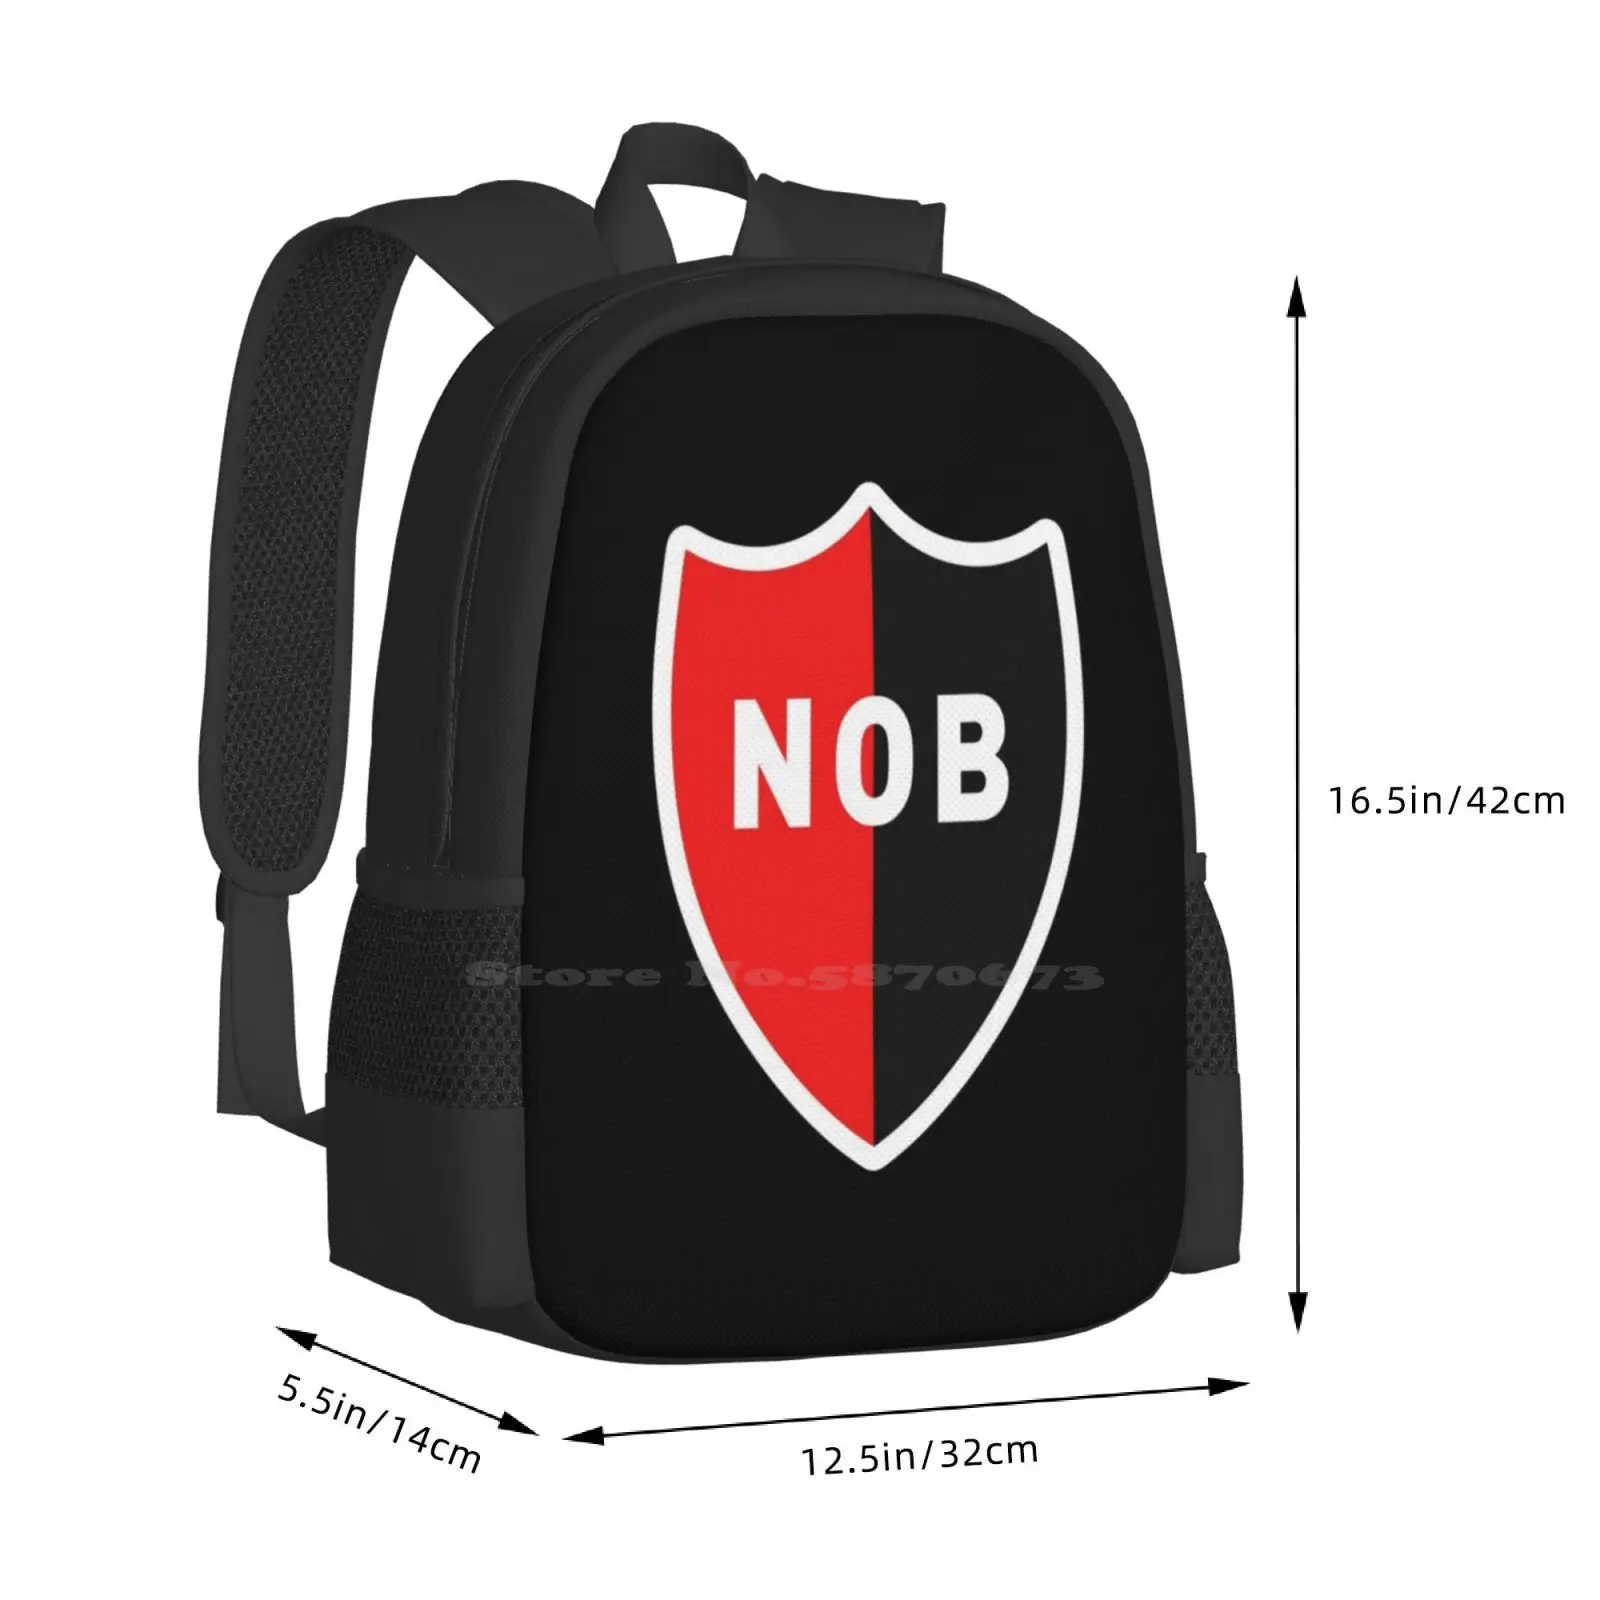 Newell Padrão de Moda Design de Viagem Portátil Escola de Mochila Saco Newells Old Boys Estádio Marcelo Bielsa Nob Logotipo Escudo Escudo